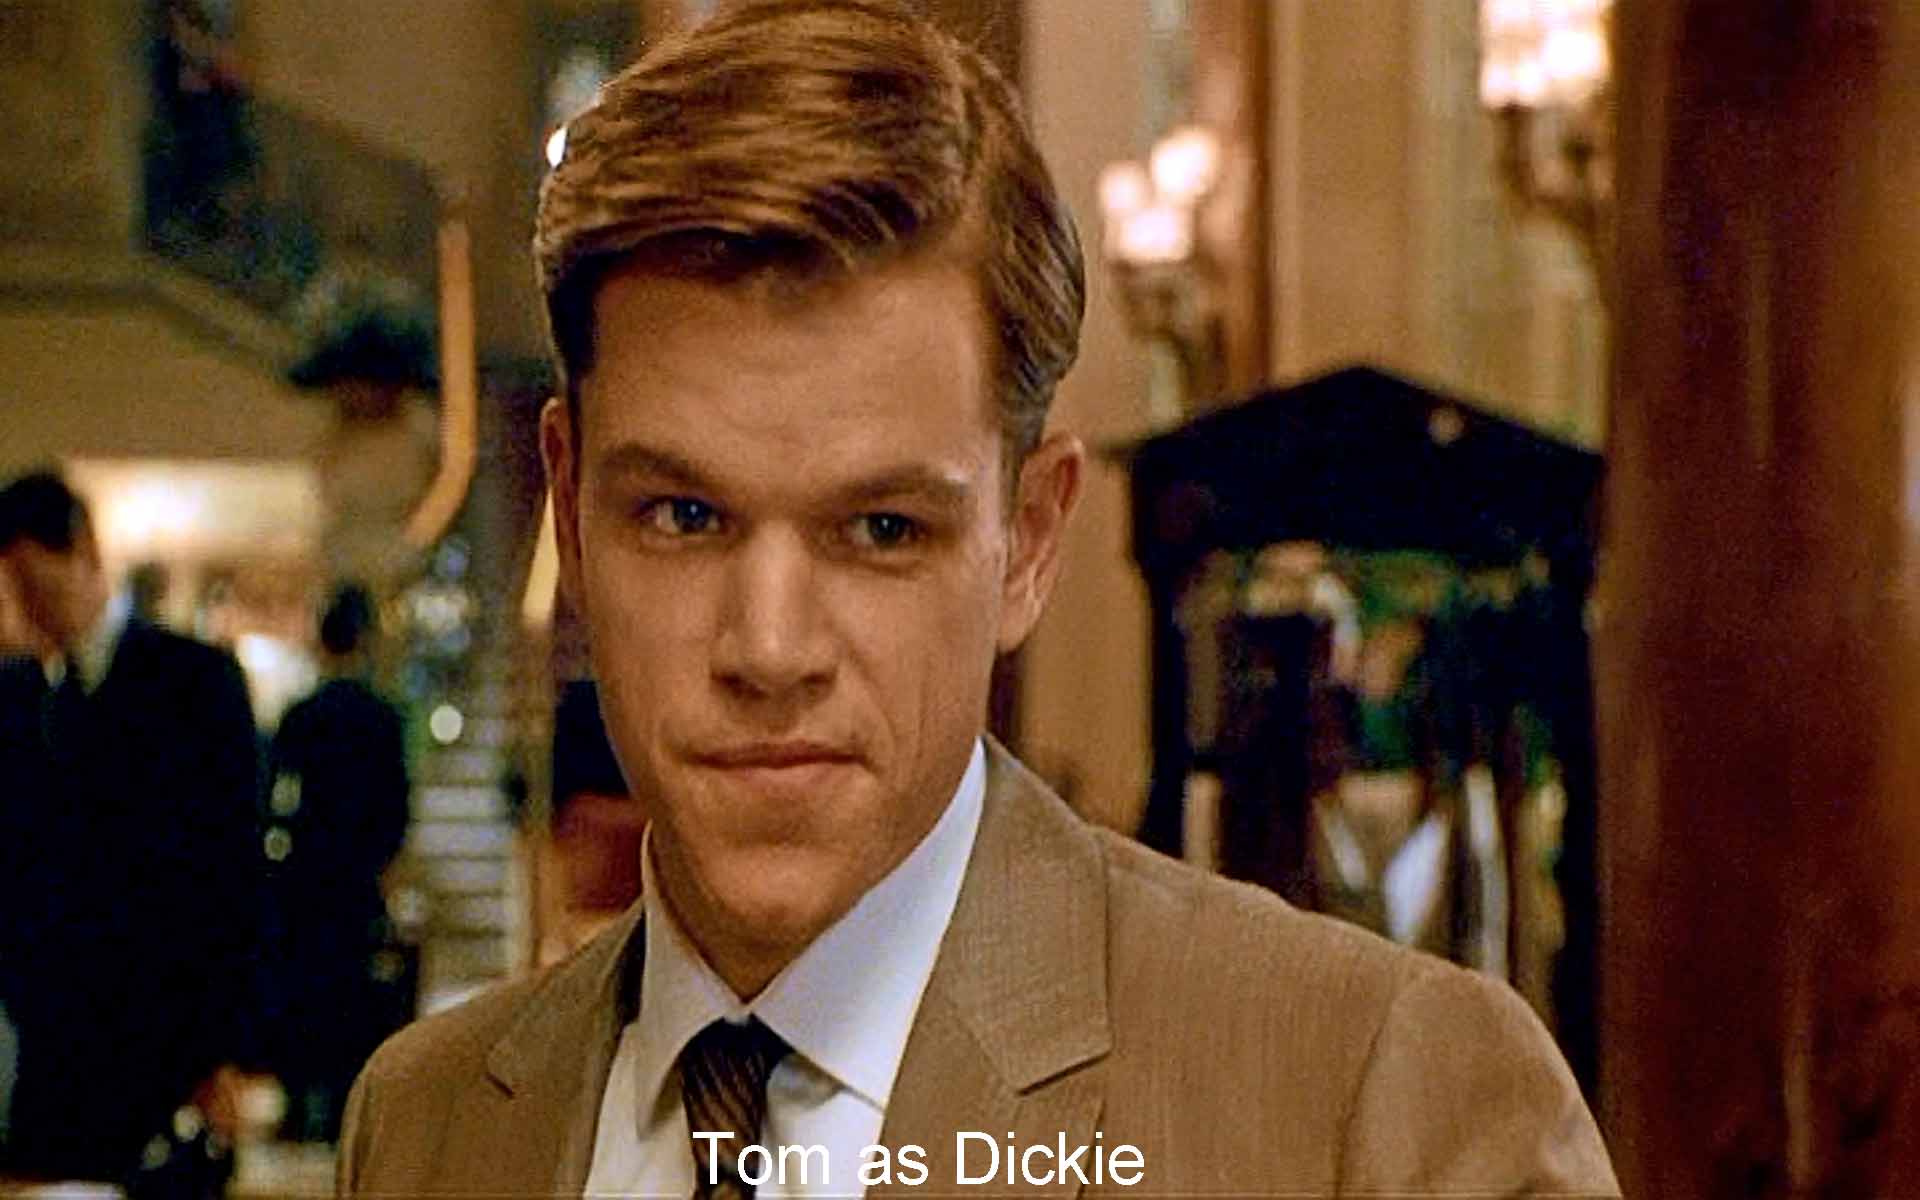 Tom as Dickie